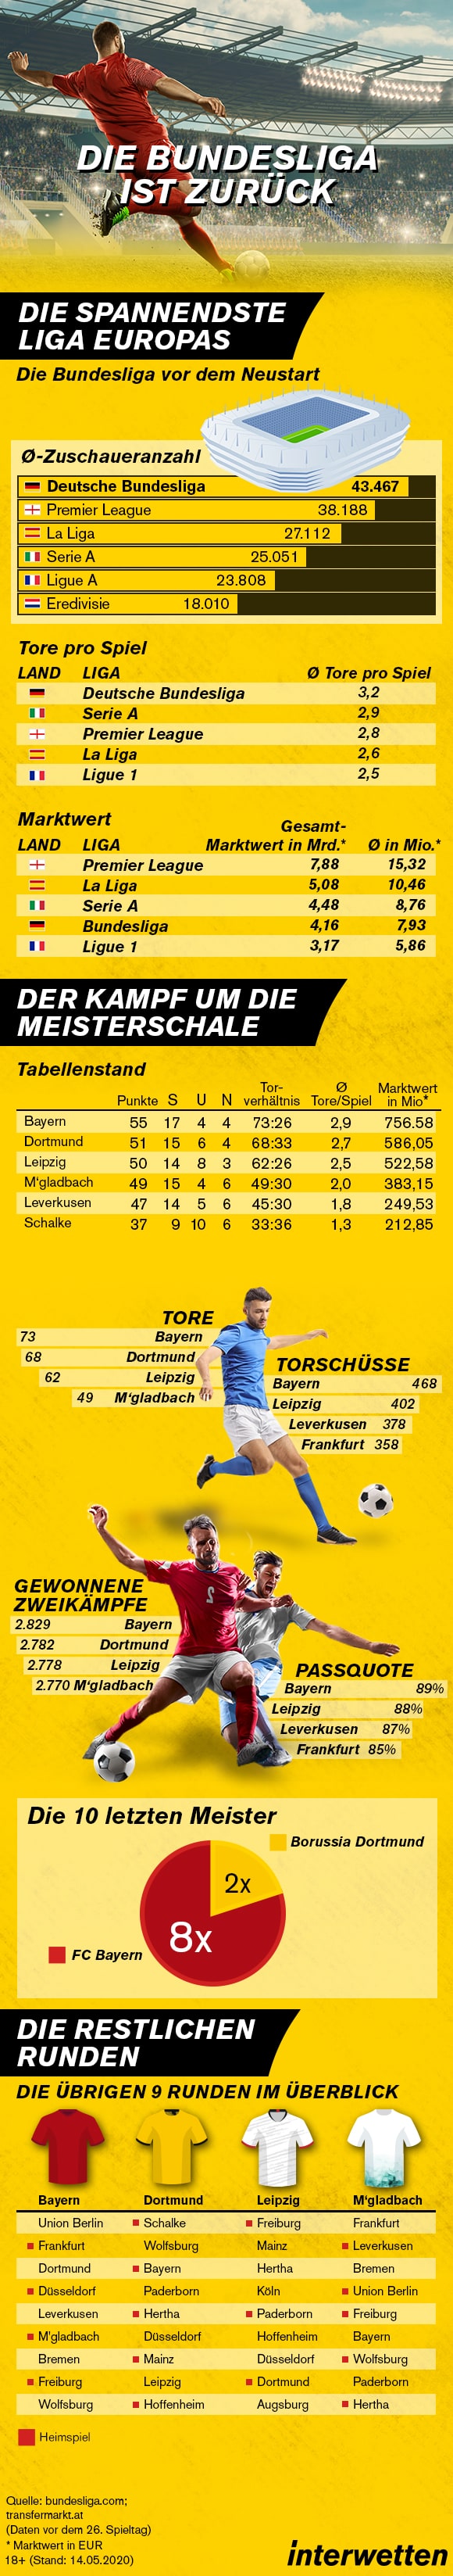 Infografik Bundesliga Restart Interwetten 05 2020